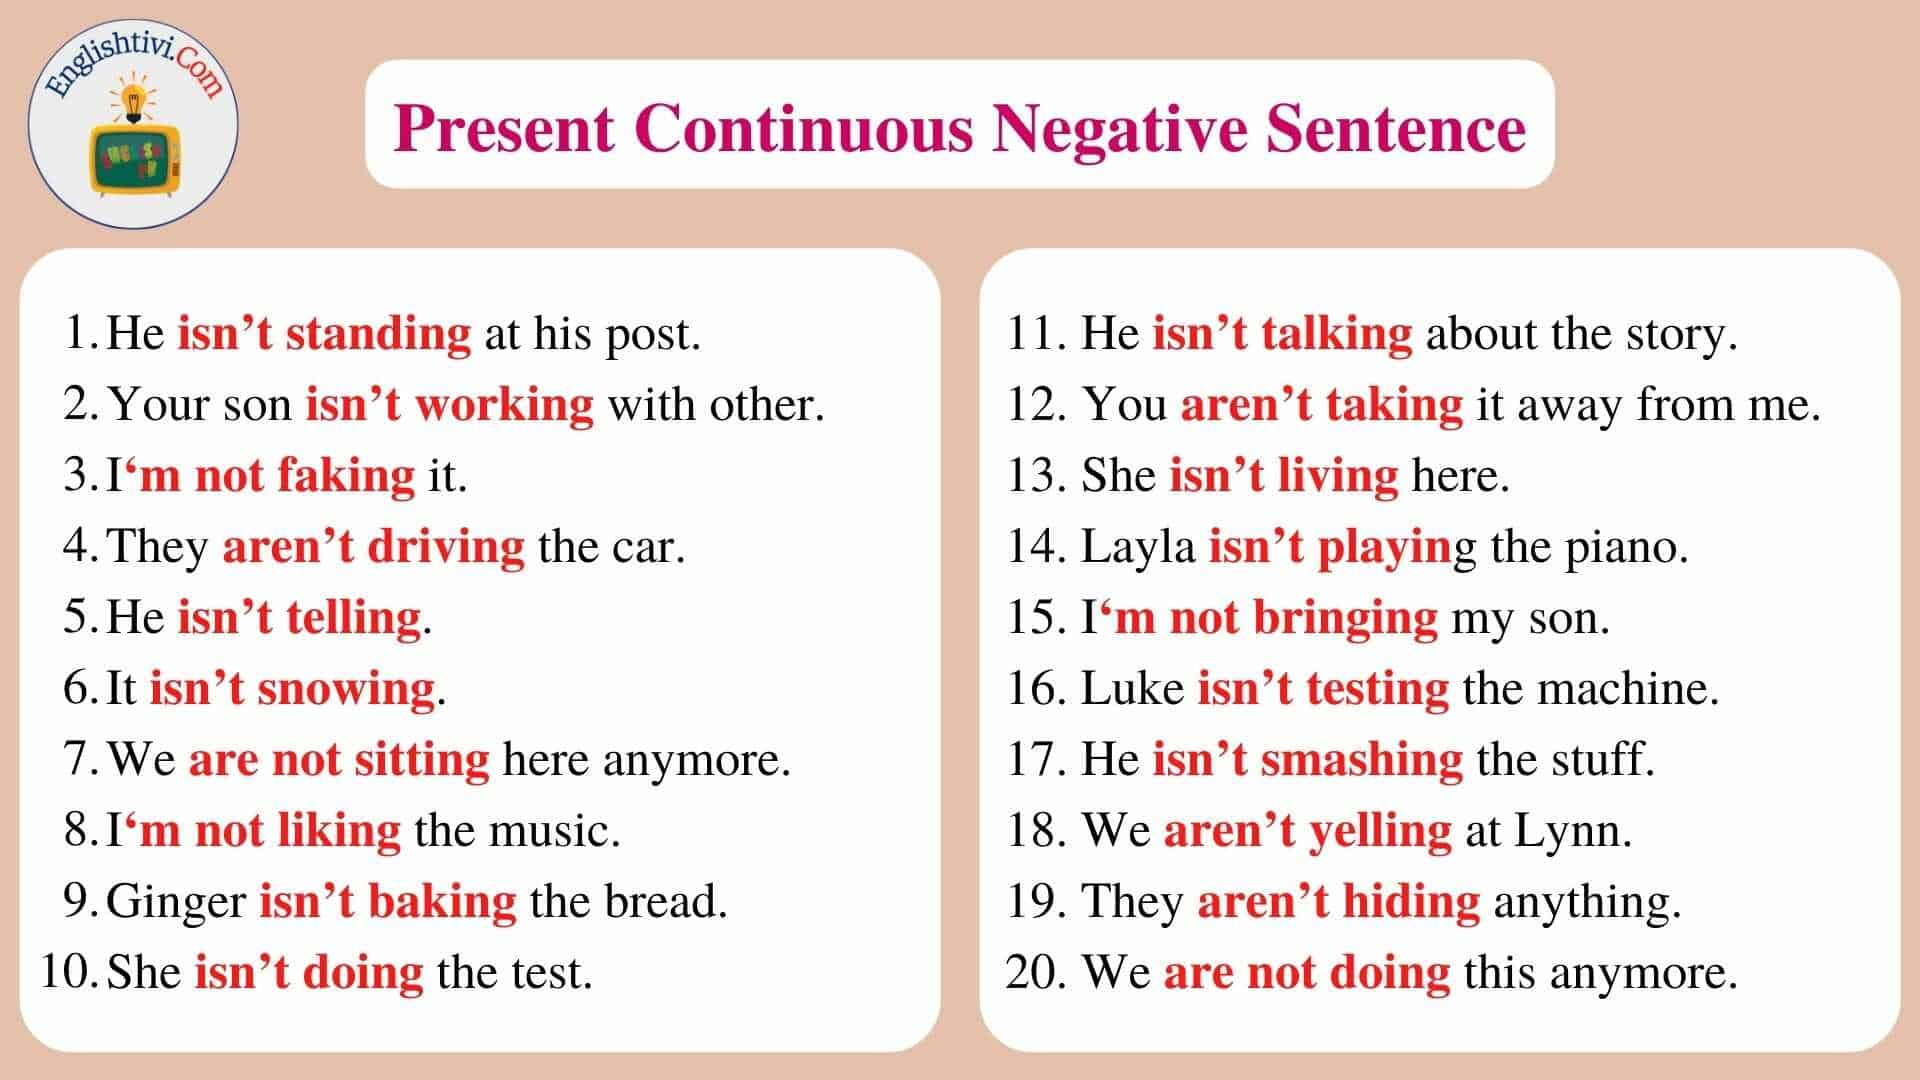 Present_Continuous_Negative_Sentence